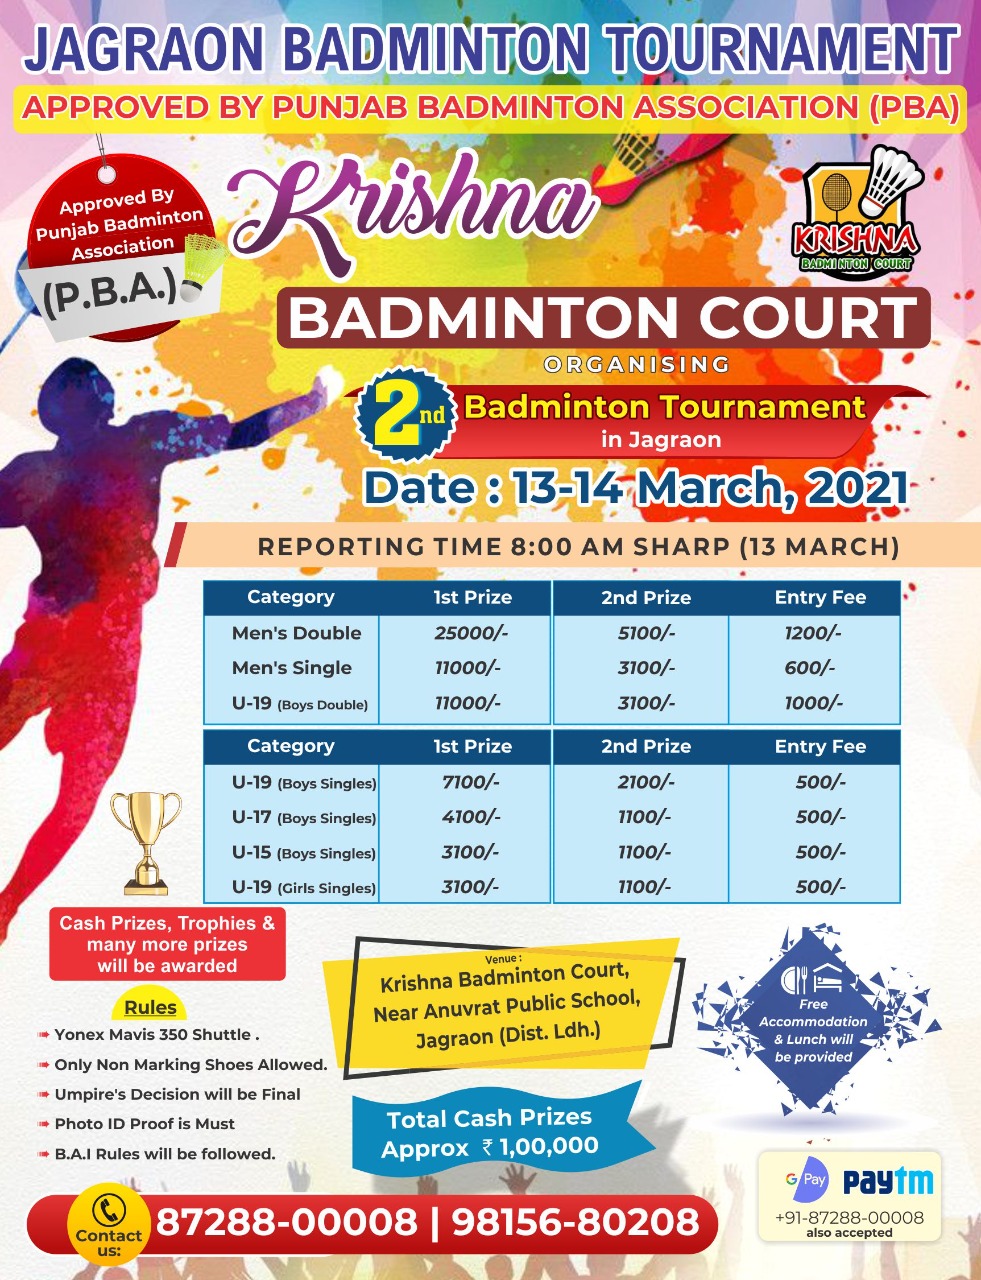 Krishna Badminton Court,